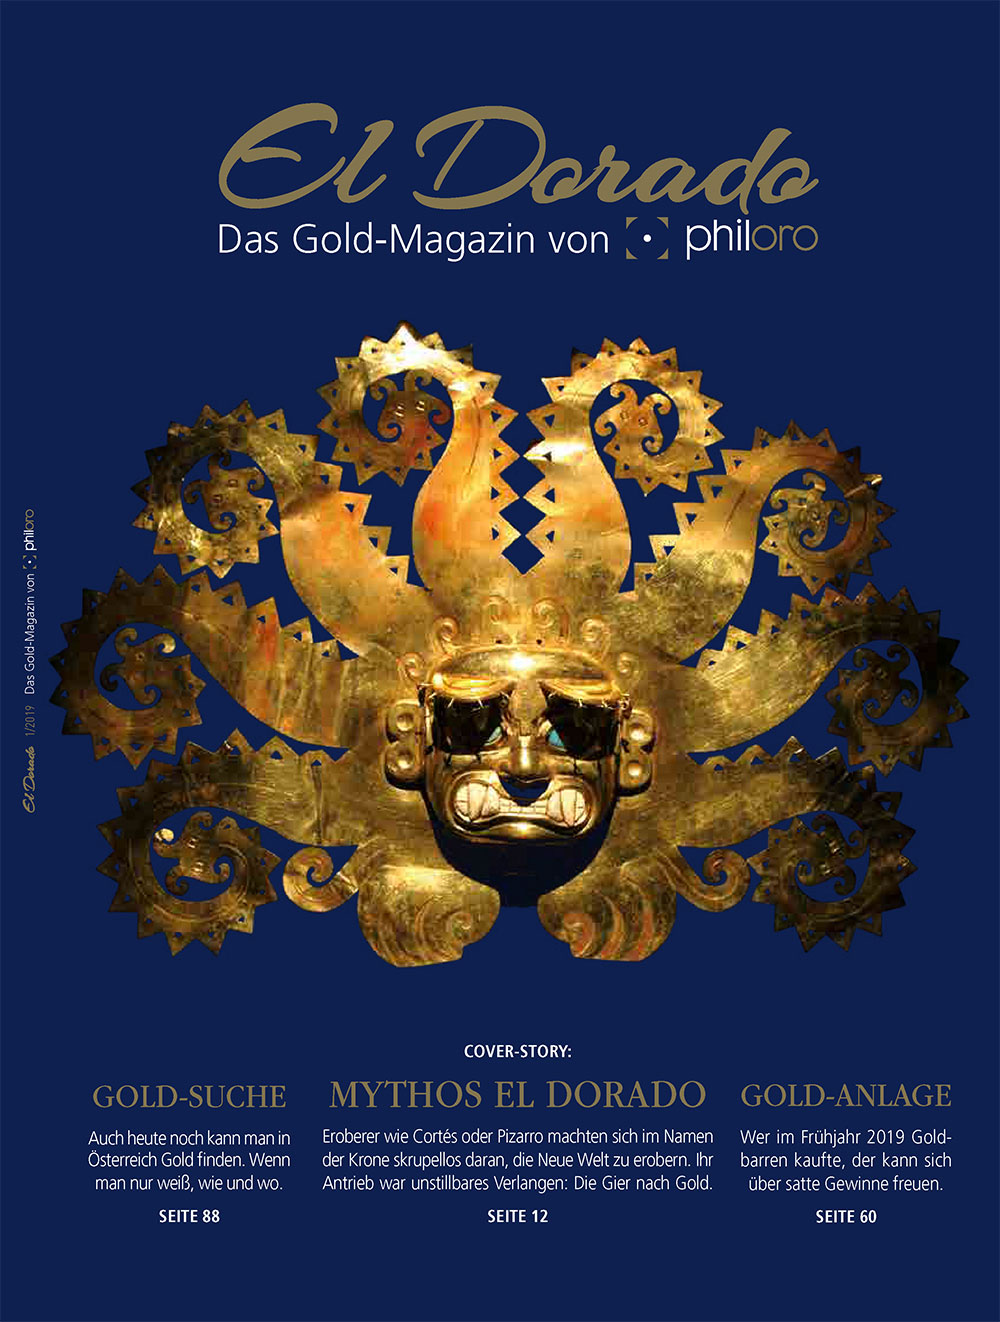 El Dorado Magazin von philoro